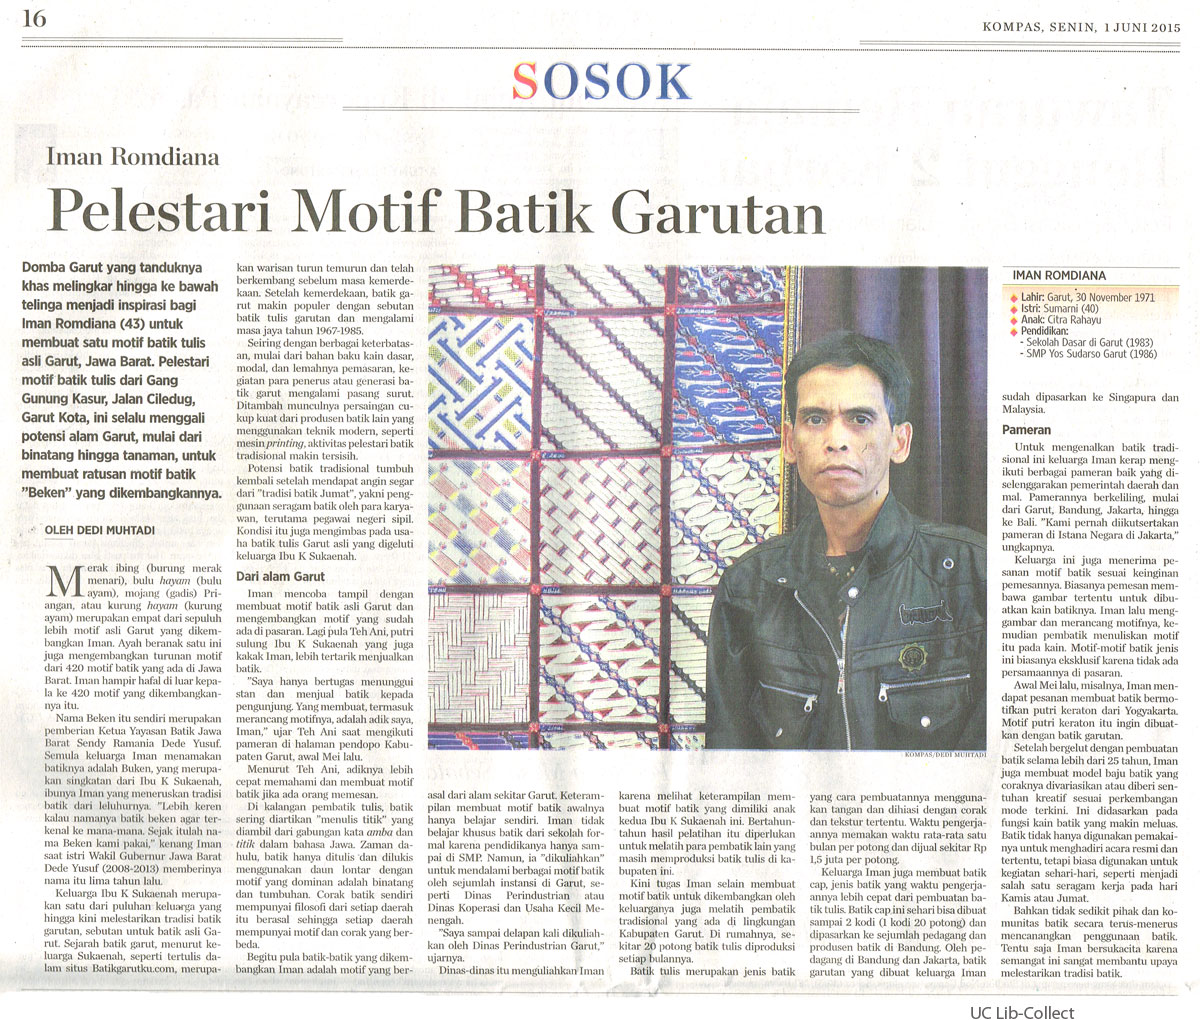 Pelestari-Motif-Batik-Garutan.-Kompas.1-Juni-2015.Hal.16